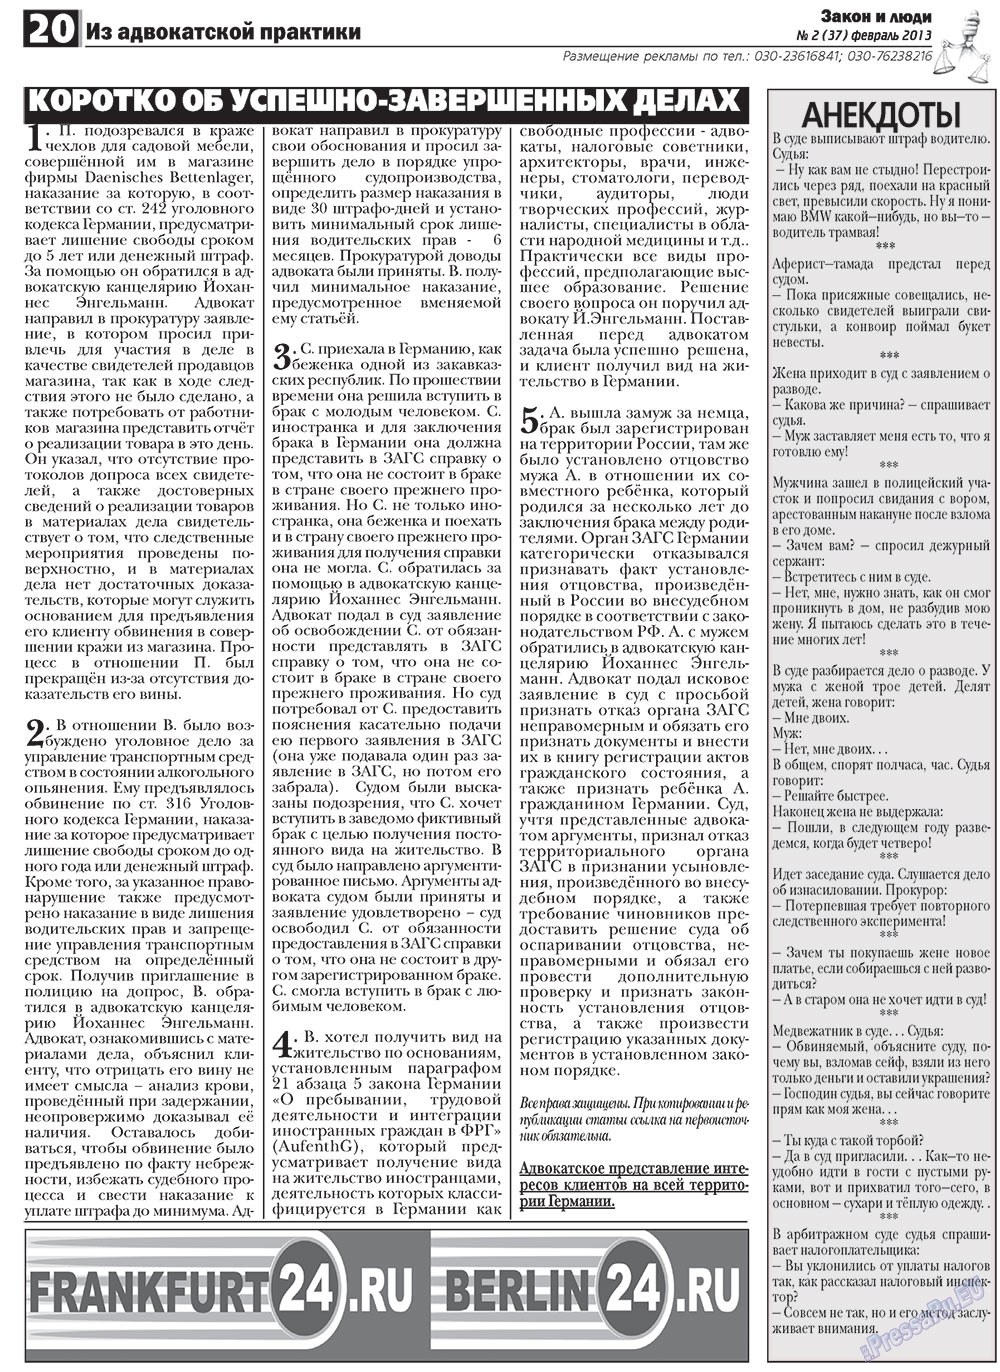 Закон и люди, газета. 2013 №2 стр.20